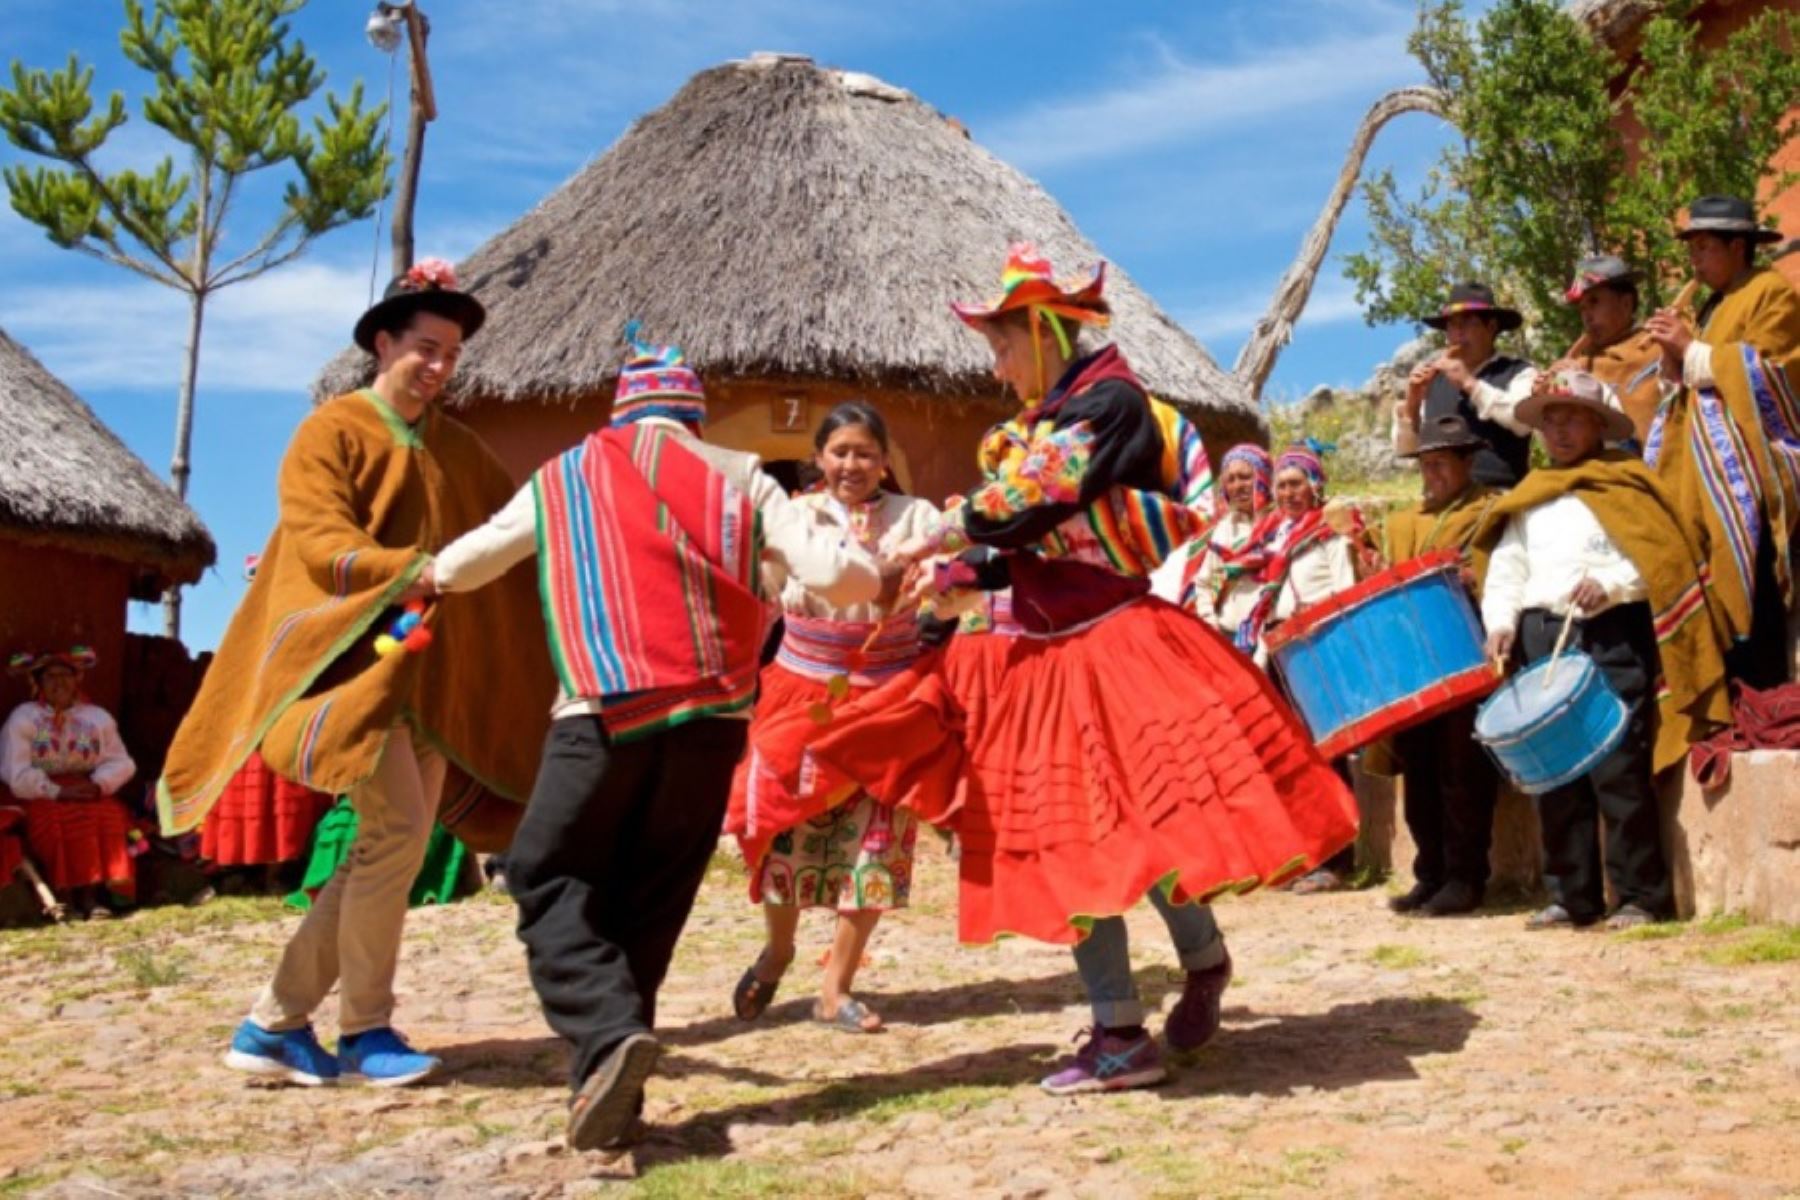 El turismo comunitario es una forma novedosa de viajar y conocer el Perú, a través de experiencias en las que los viajeros pasan por una vivencia real, satisfactoria y memorable de las distintas culturas que componen nuestro país.